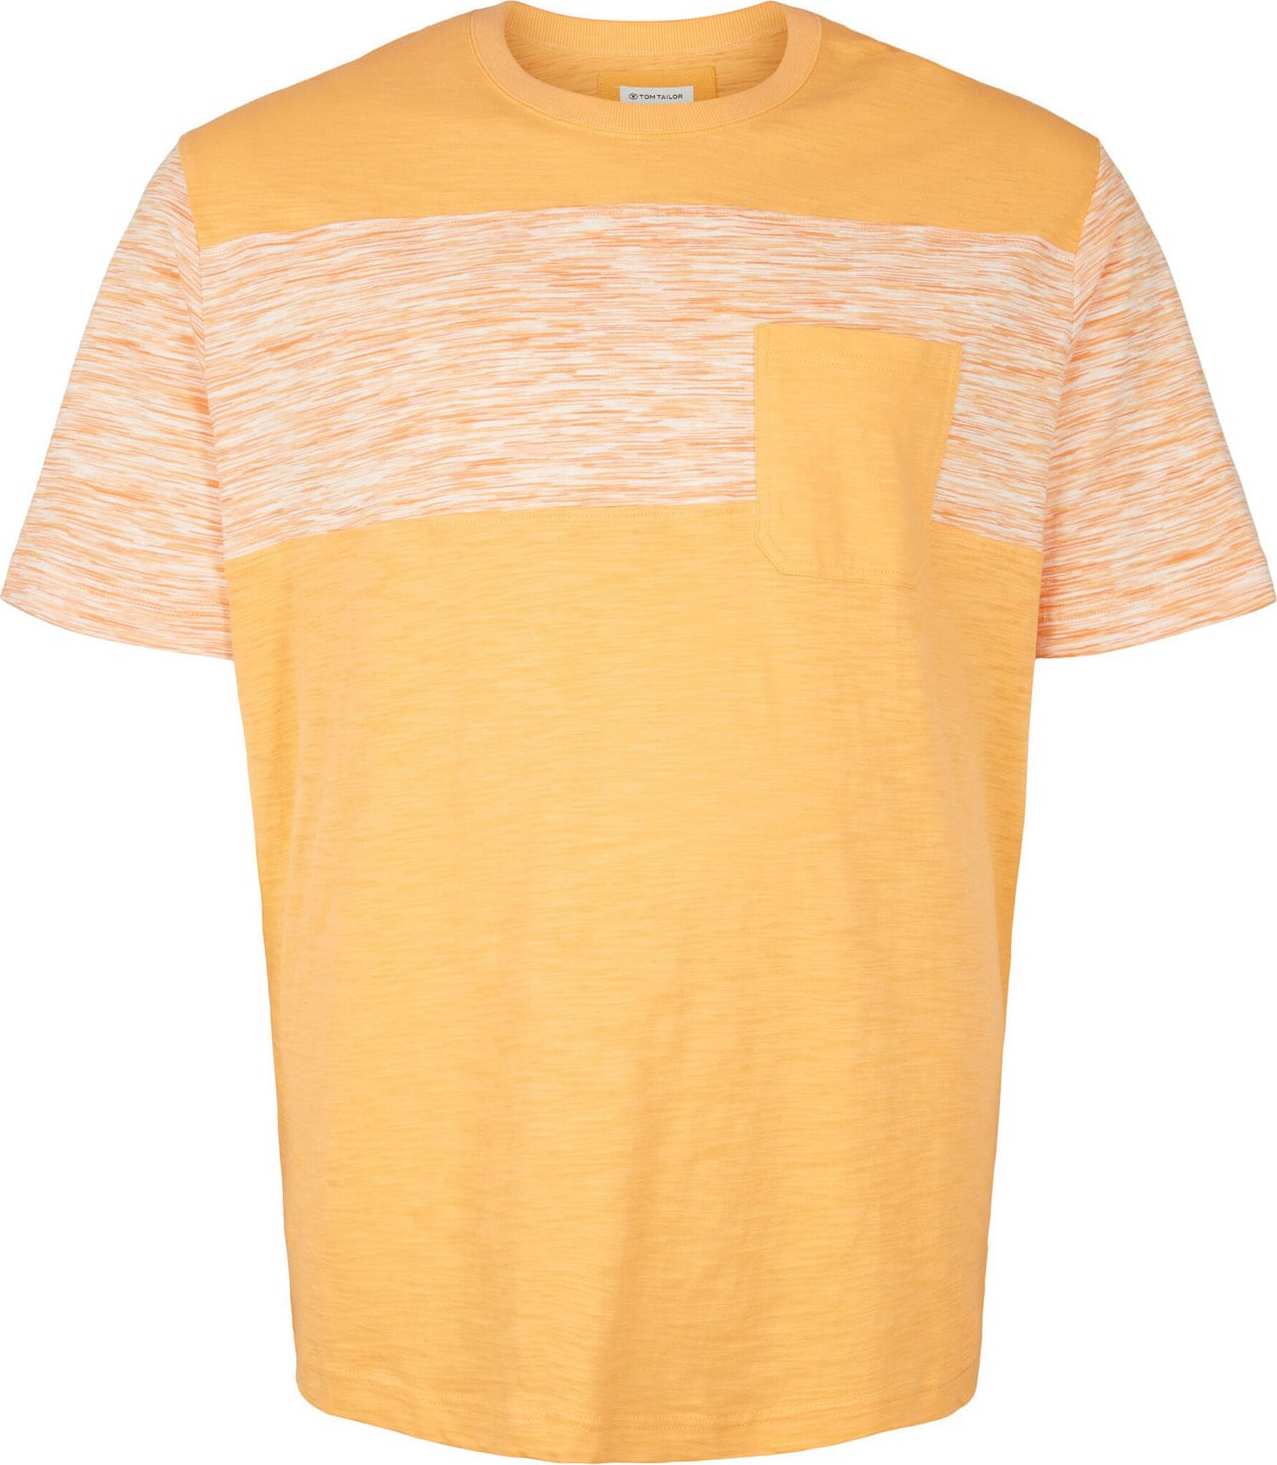 Tričko TOM TAILOR Men + oranžový melír / offwhite